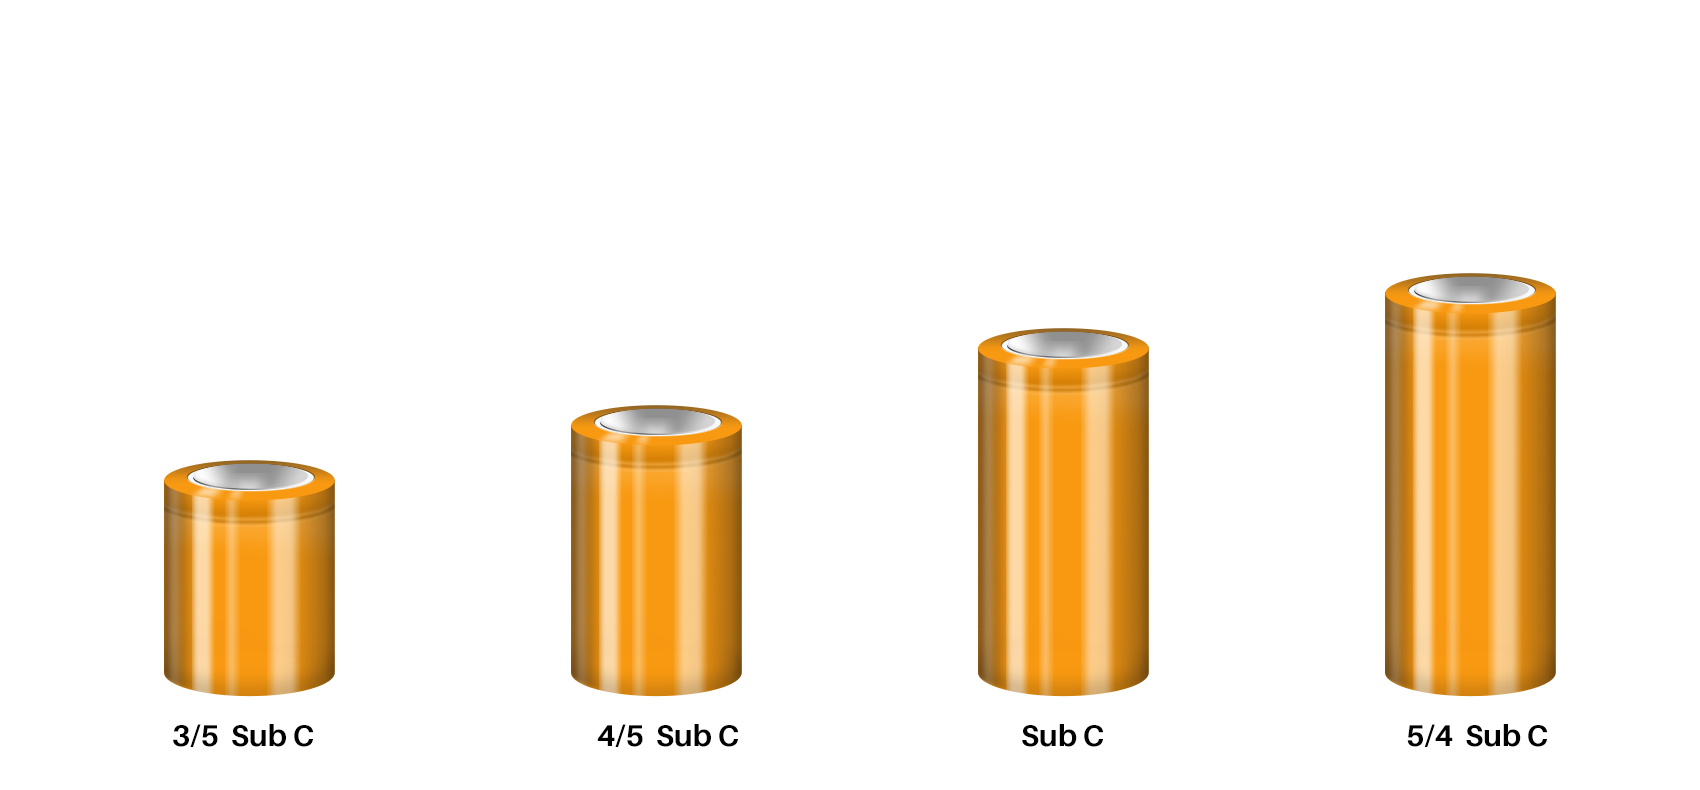 Sub C NiMH Battery Sizes